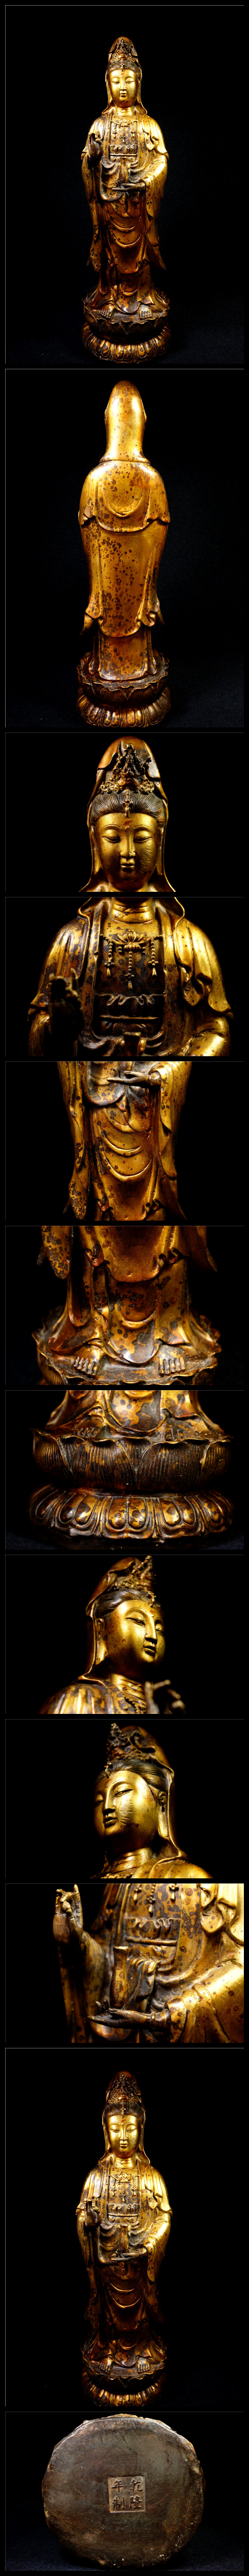 オファー金銅細工 仏教 大迫力観音菩薩造像高彫 乾隆年製 鎮宅 開運財運置物 極上質 仏像